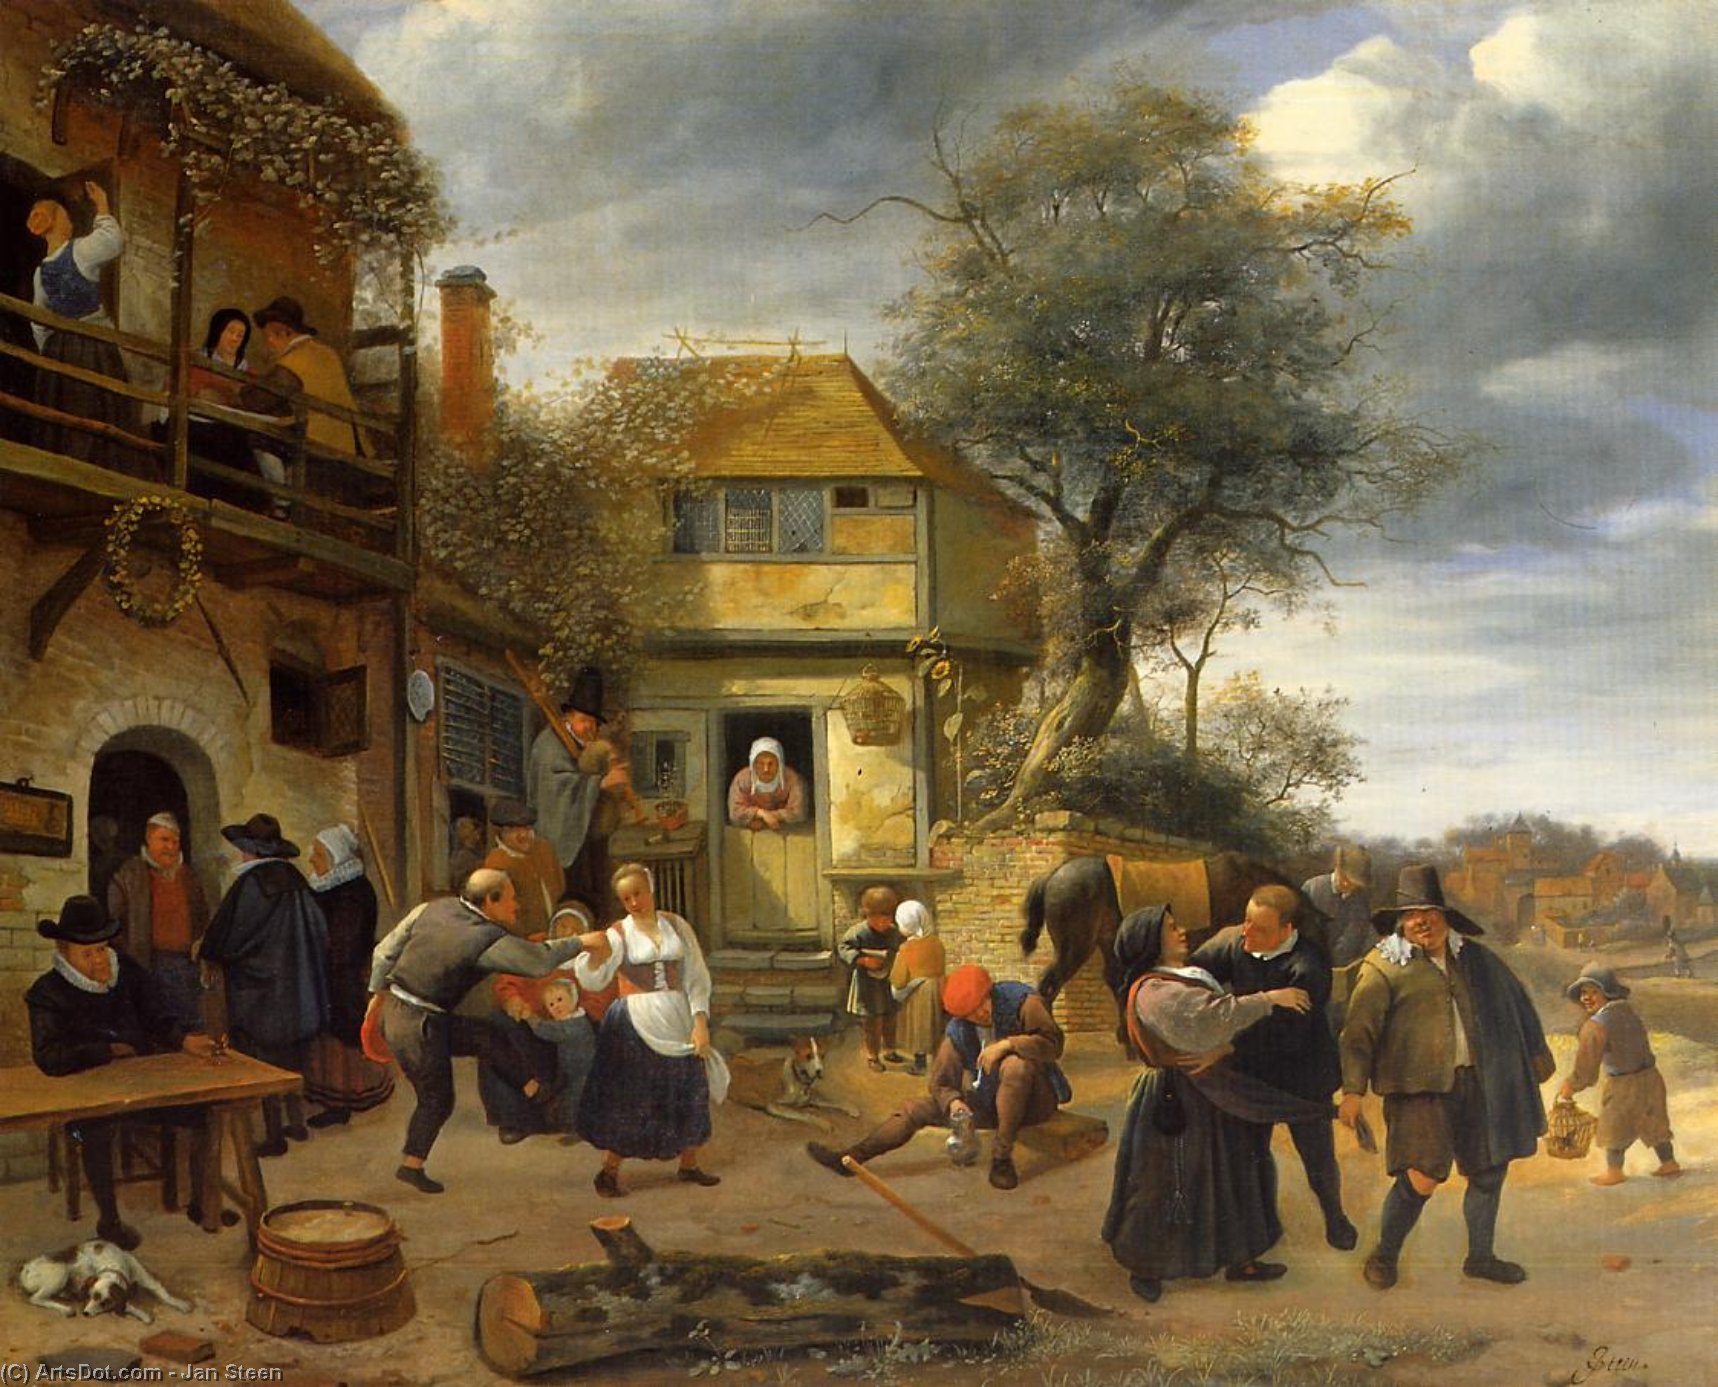 WikiOO.org - Encyclopedia of Fine Arts - Festés, Grafika Jan Steen - Peasants outside an Inn